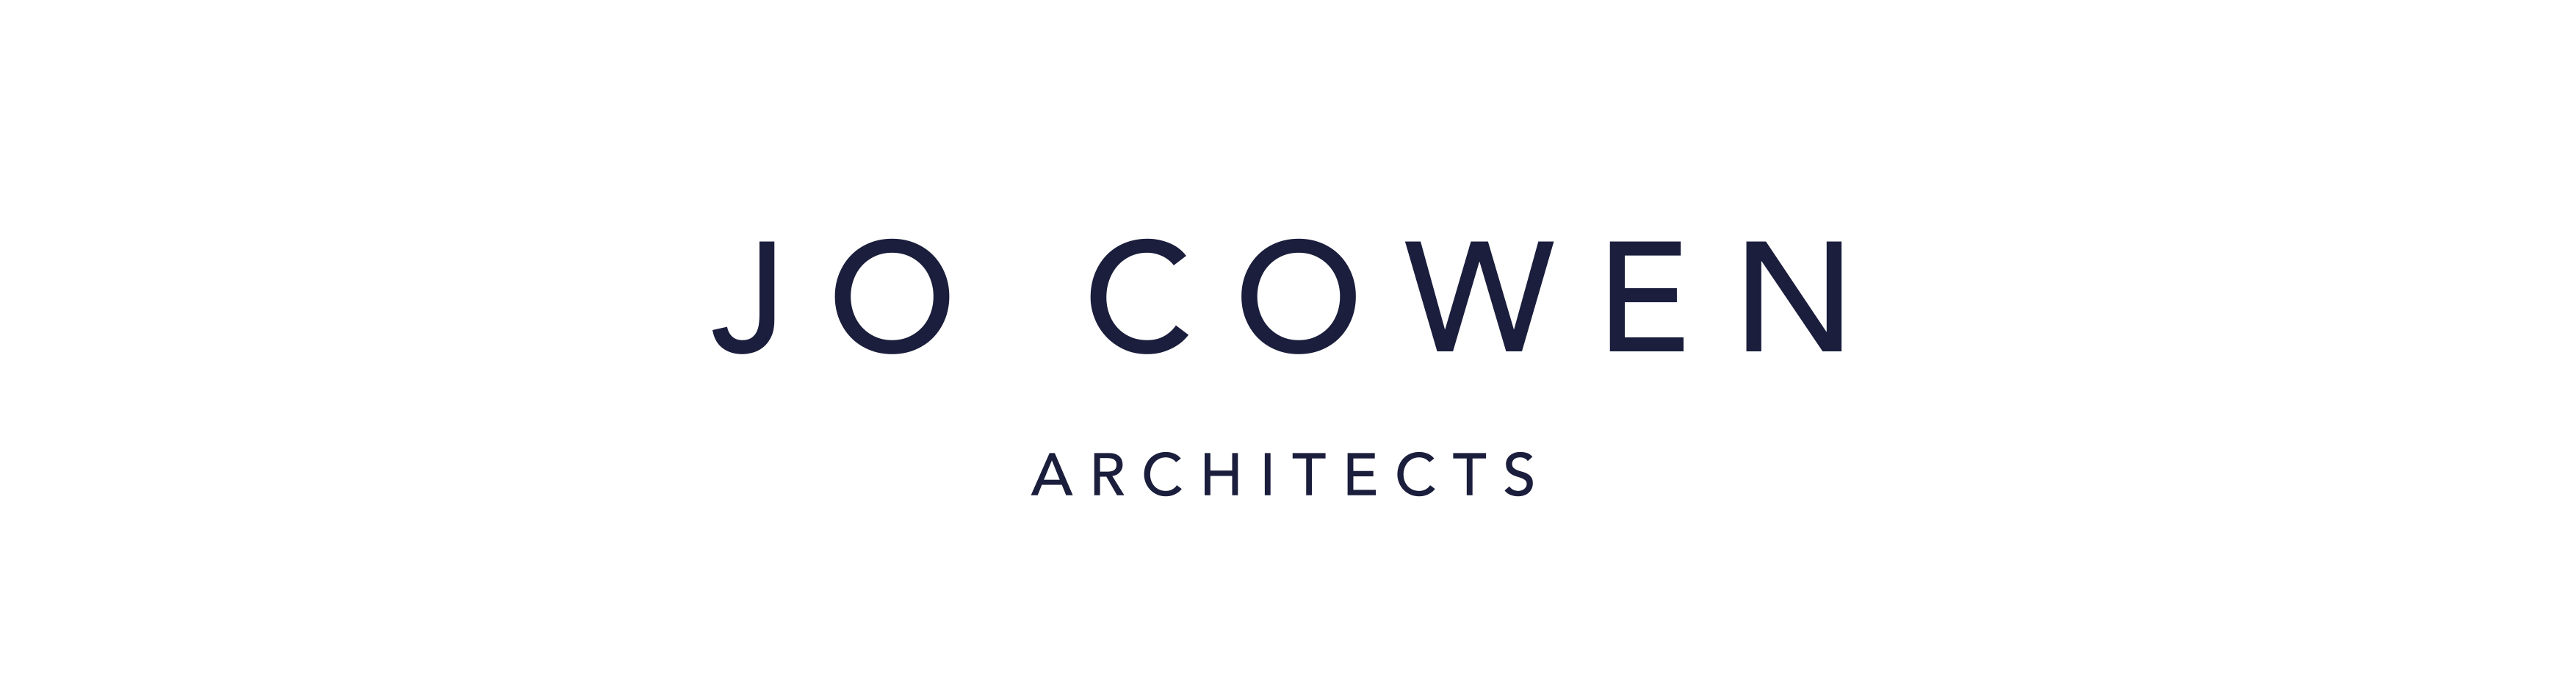 logo for Jo Cowen Architects